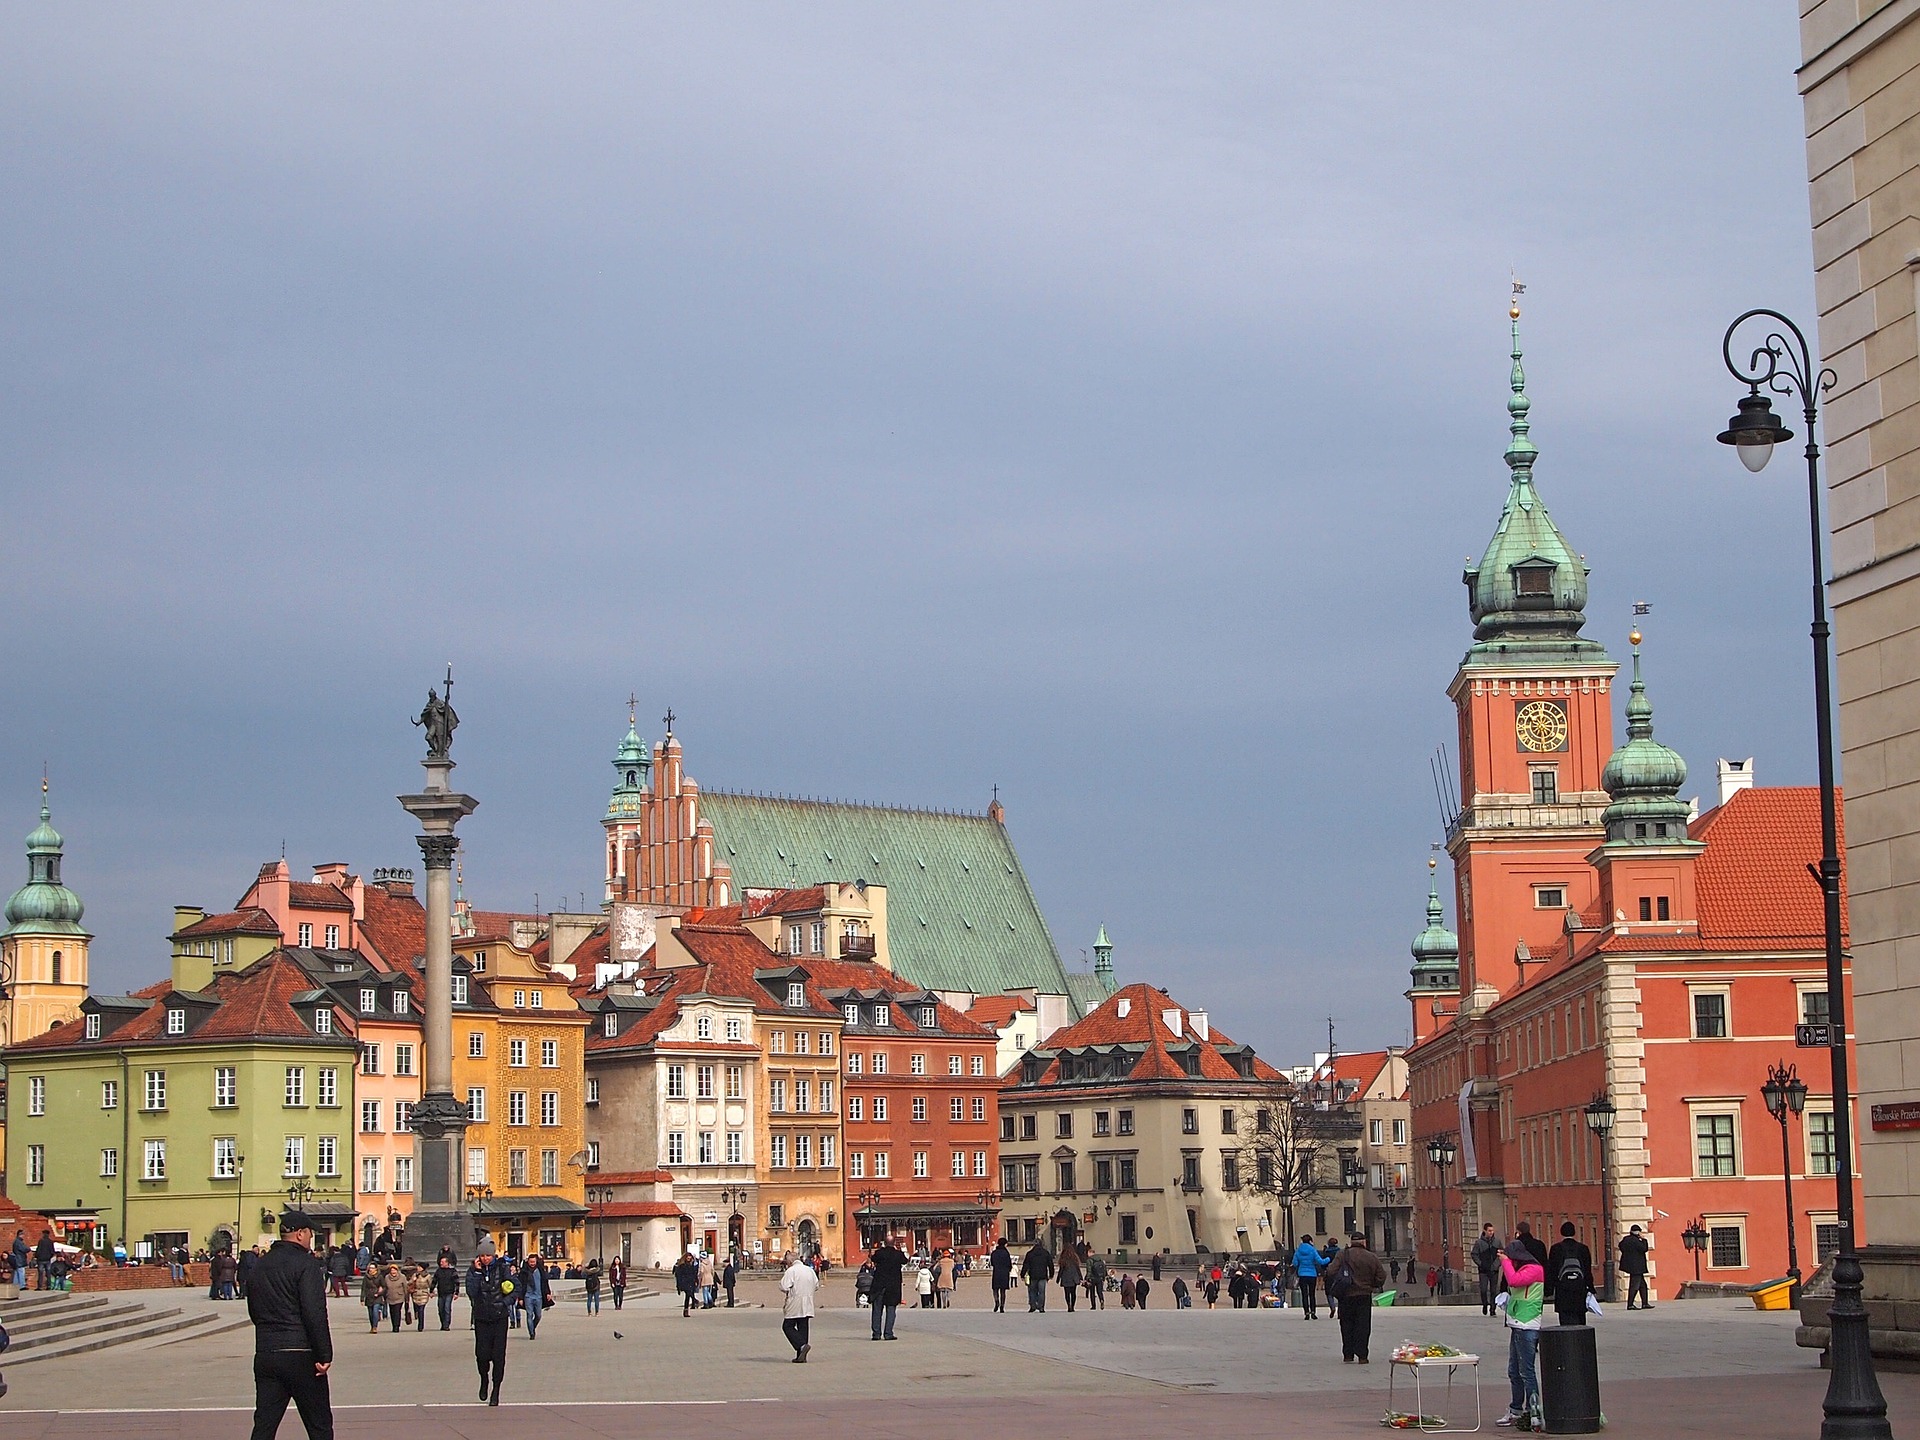 Lētas autobusu biļetes Baltijā un Varšavā